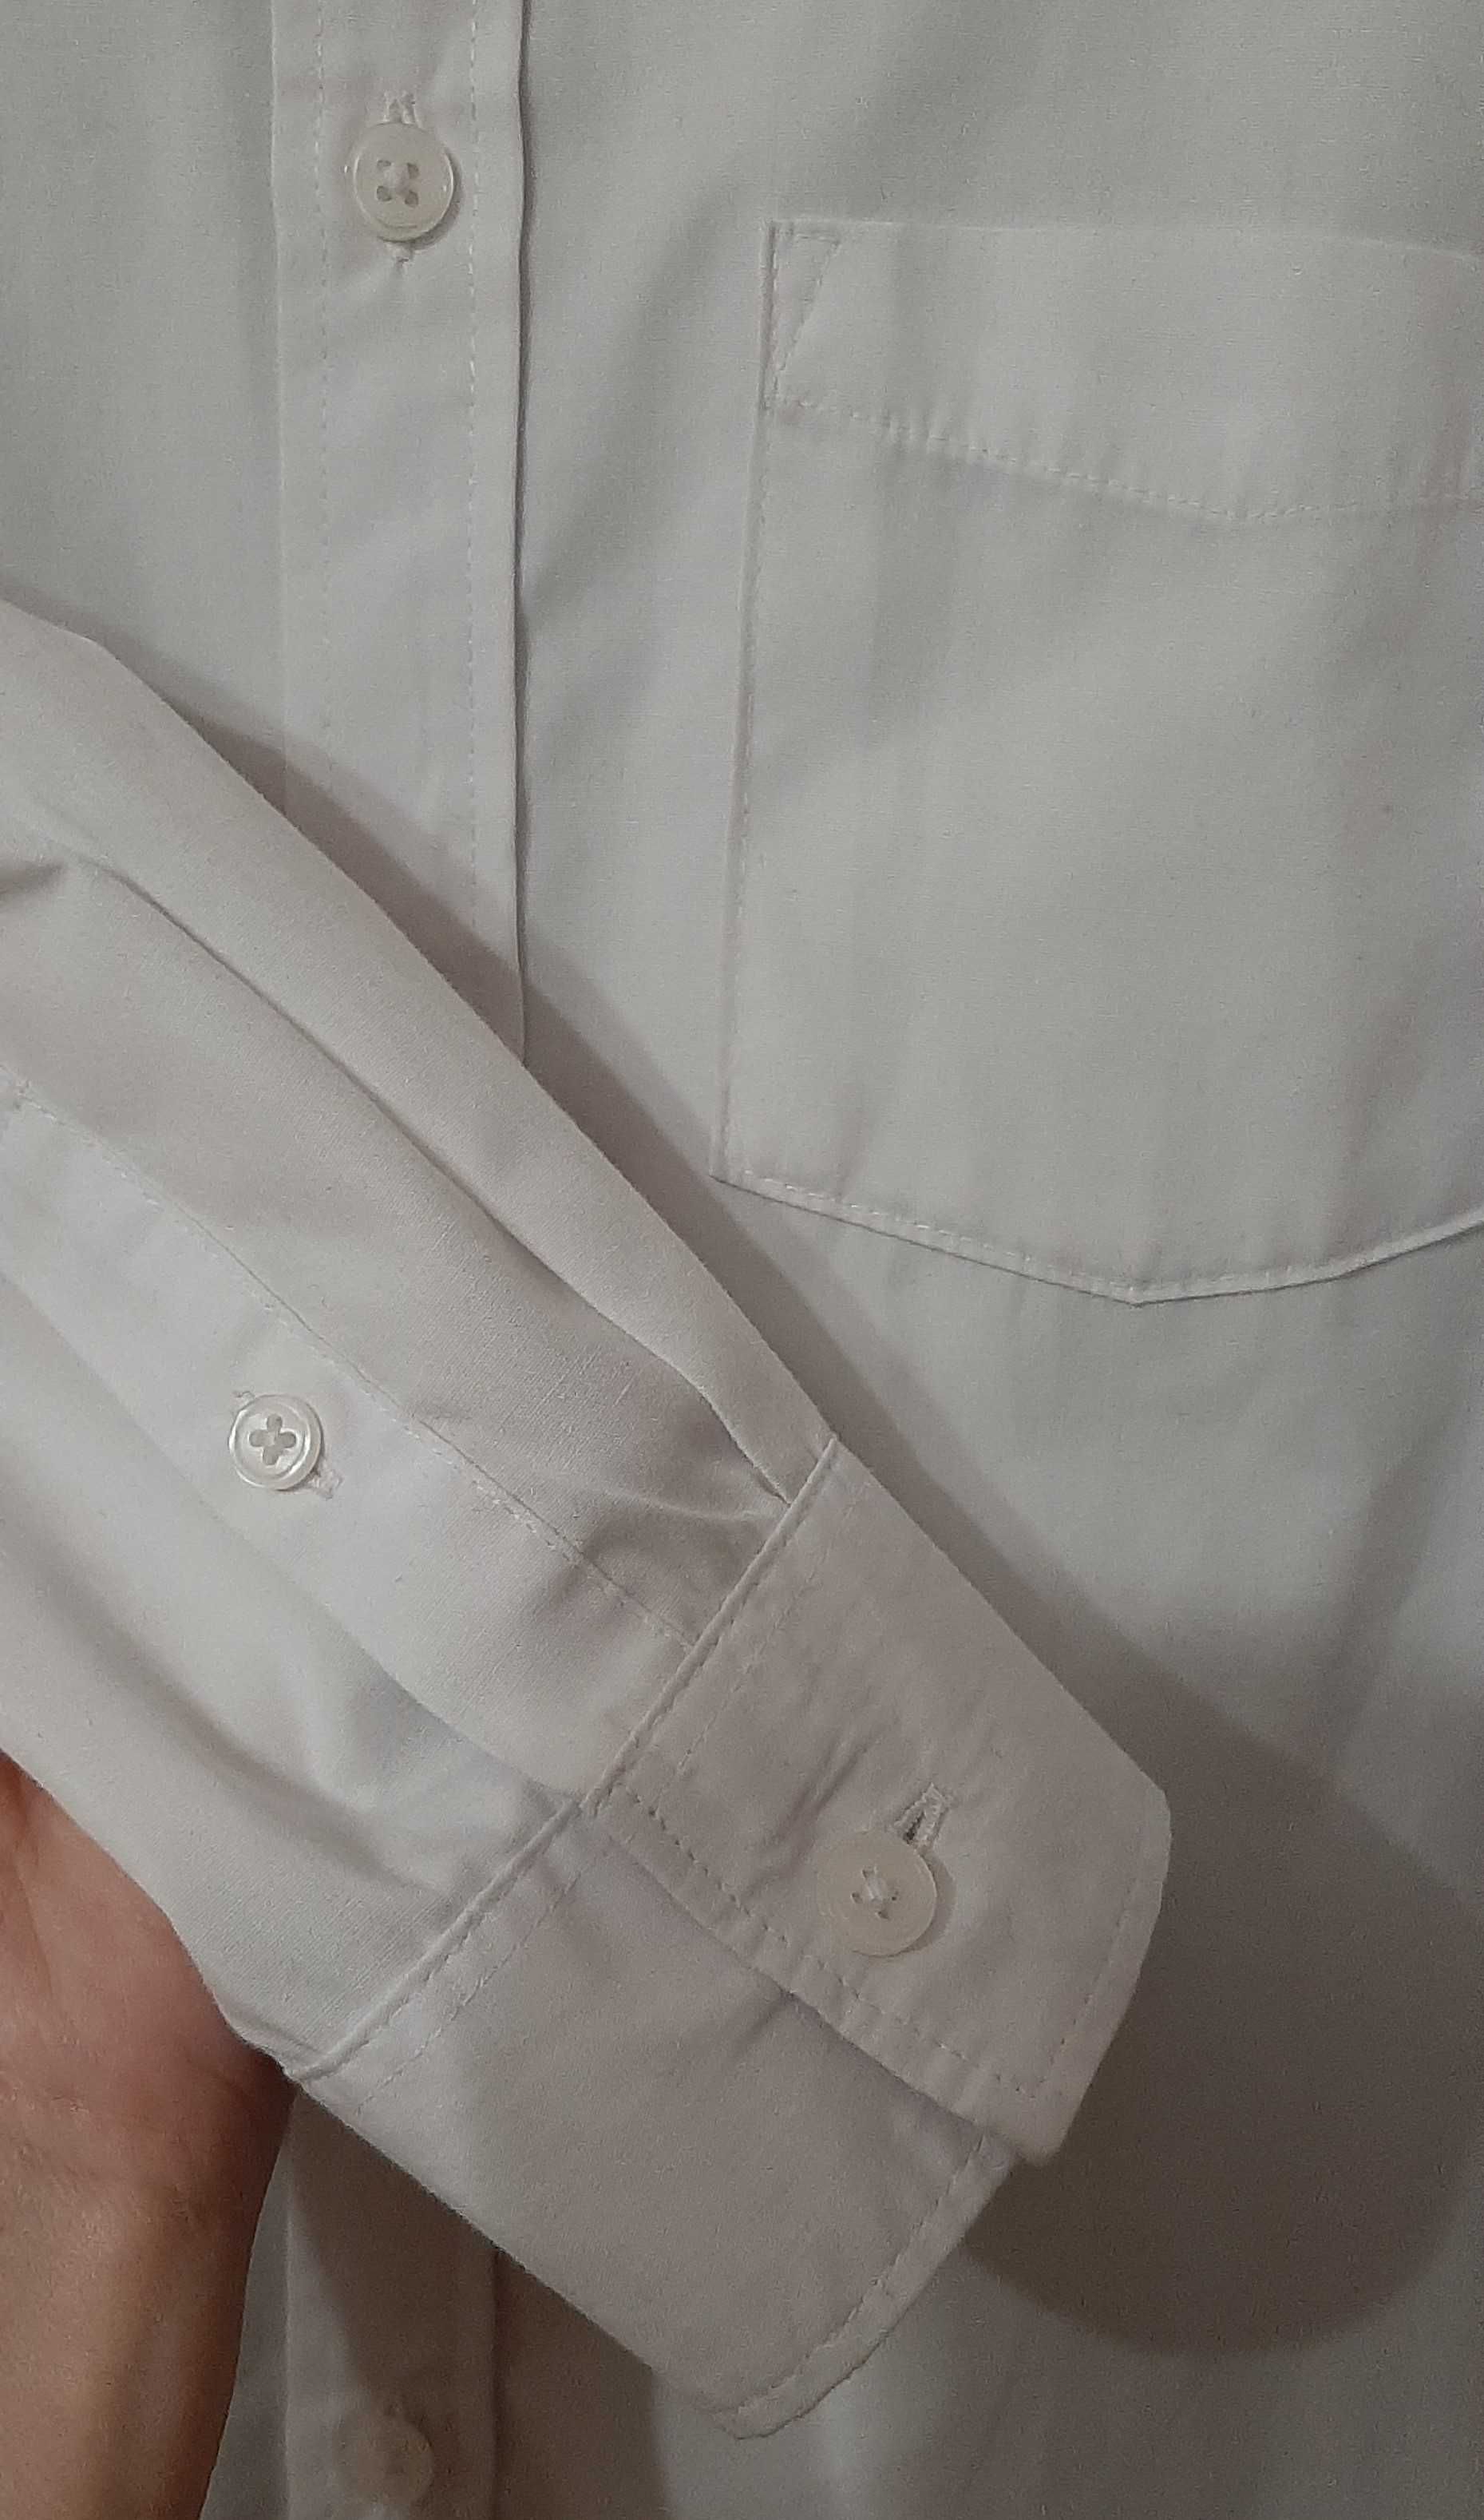 Koszula biała 158 H&M długi rękaw, galowa początek roku